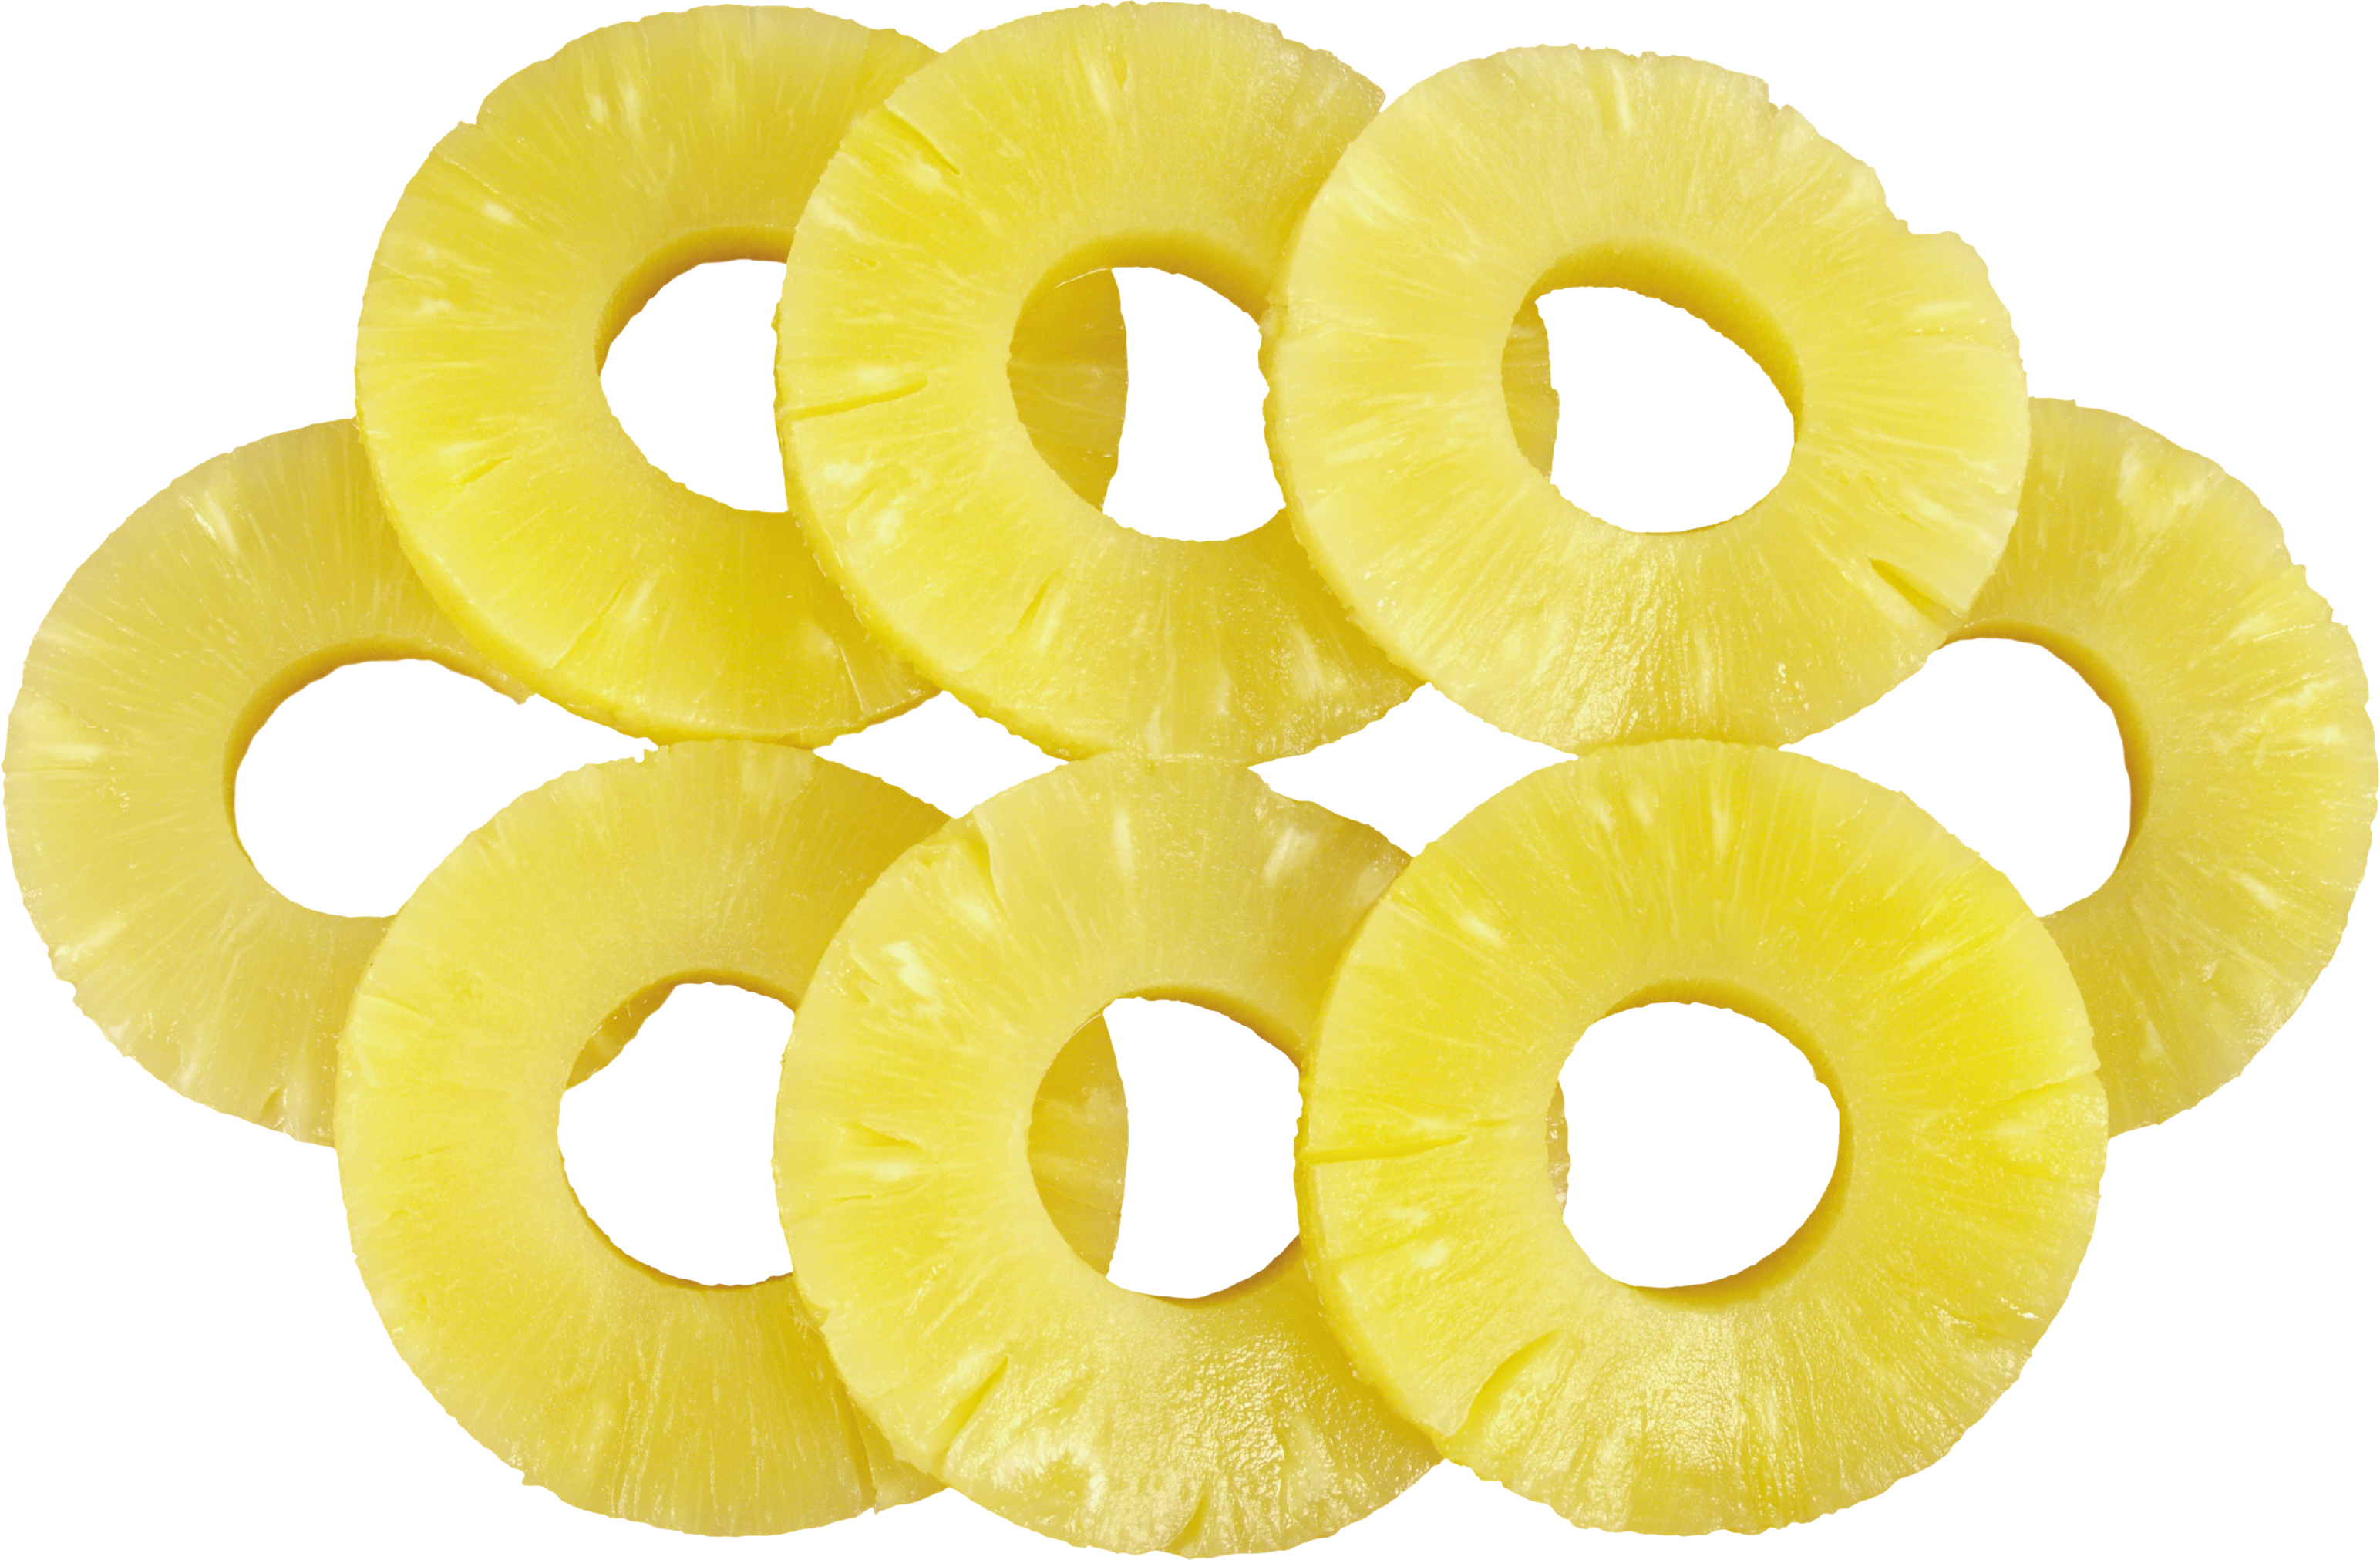 Ananasscheiben